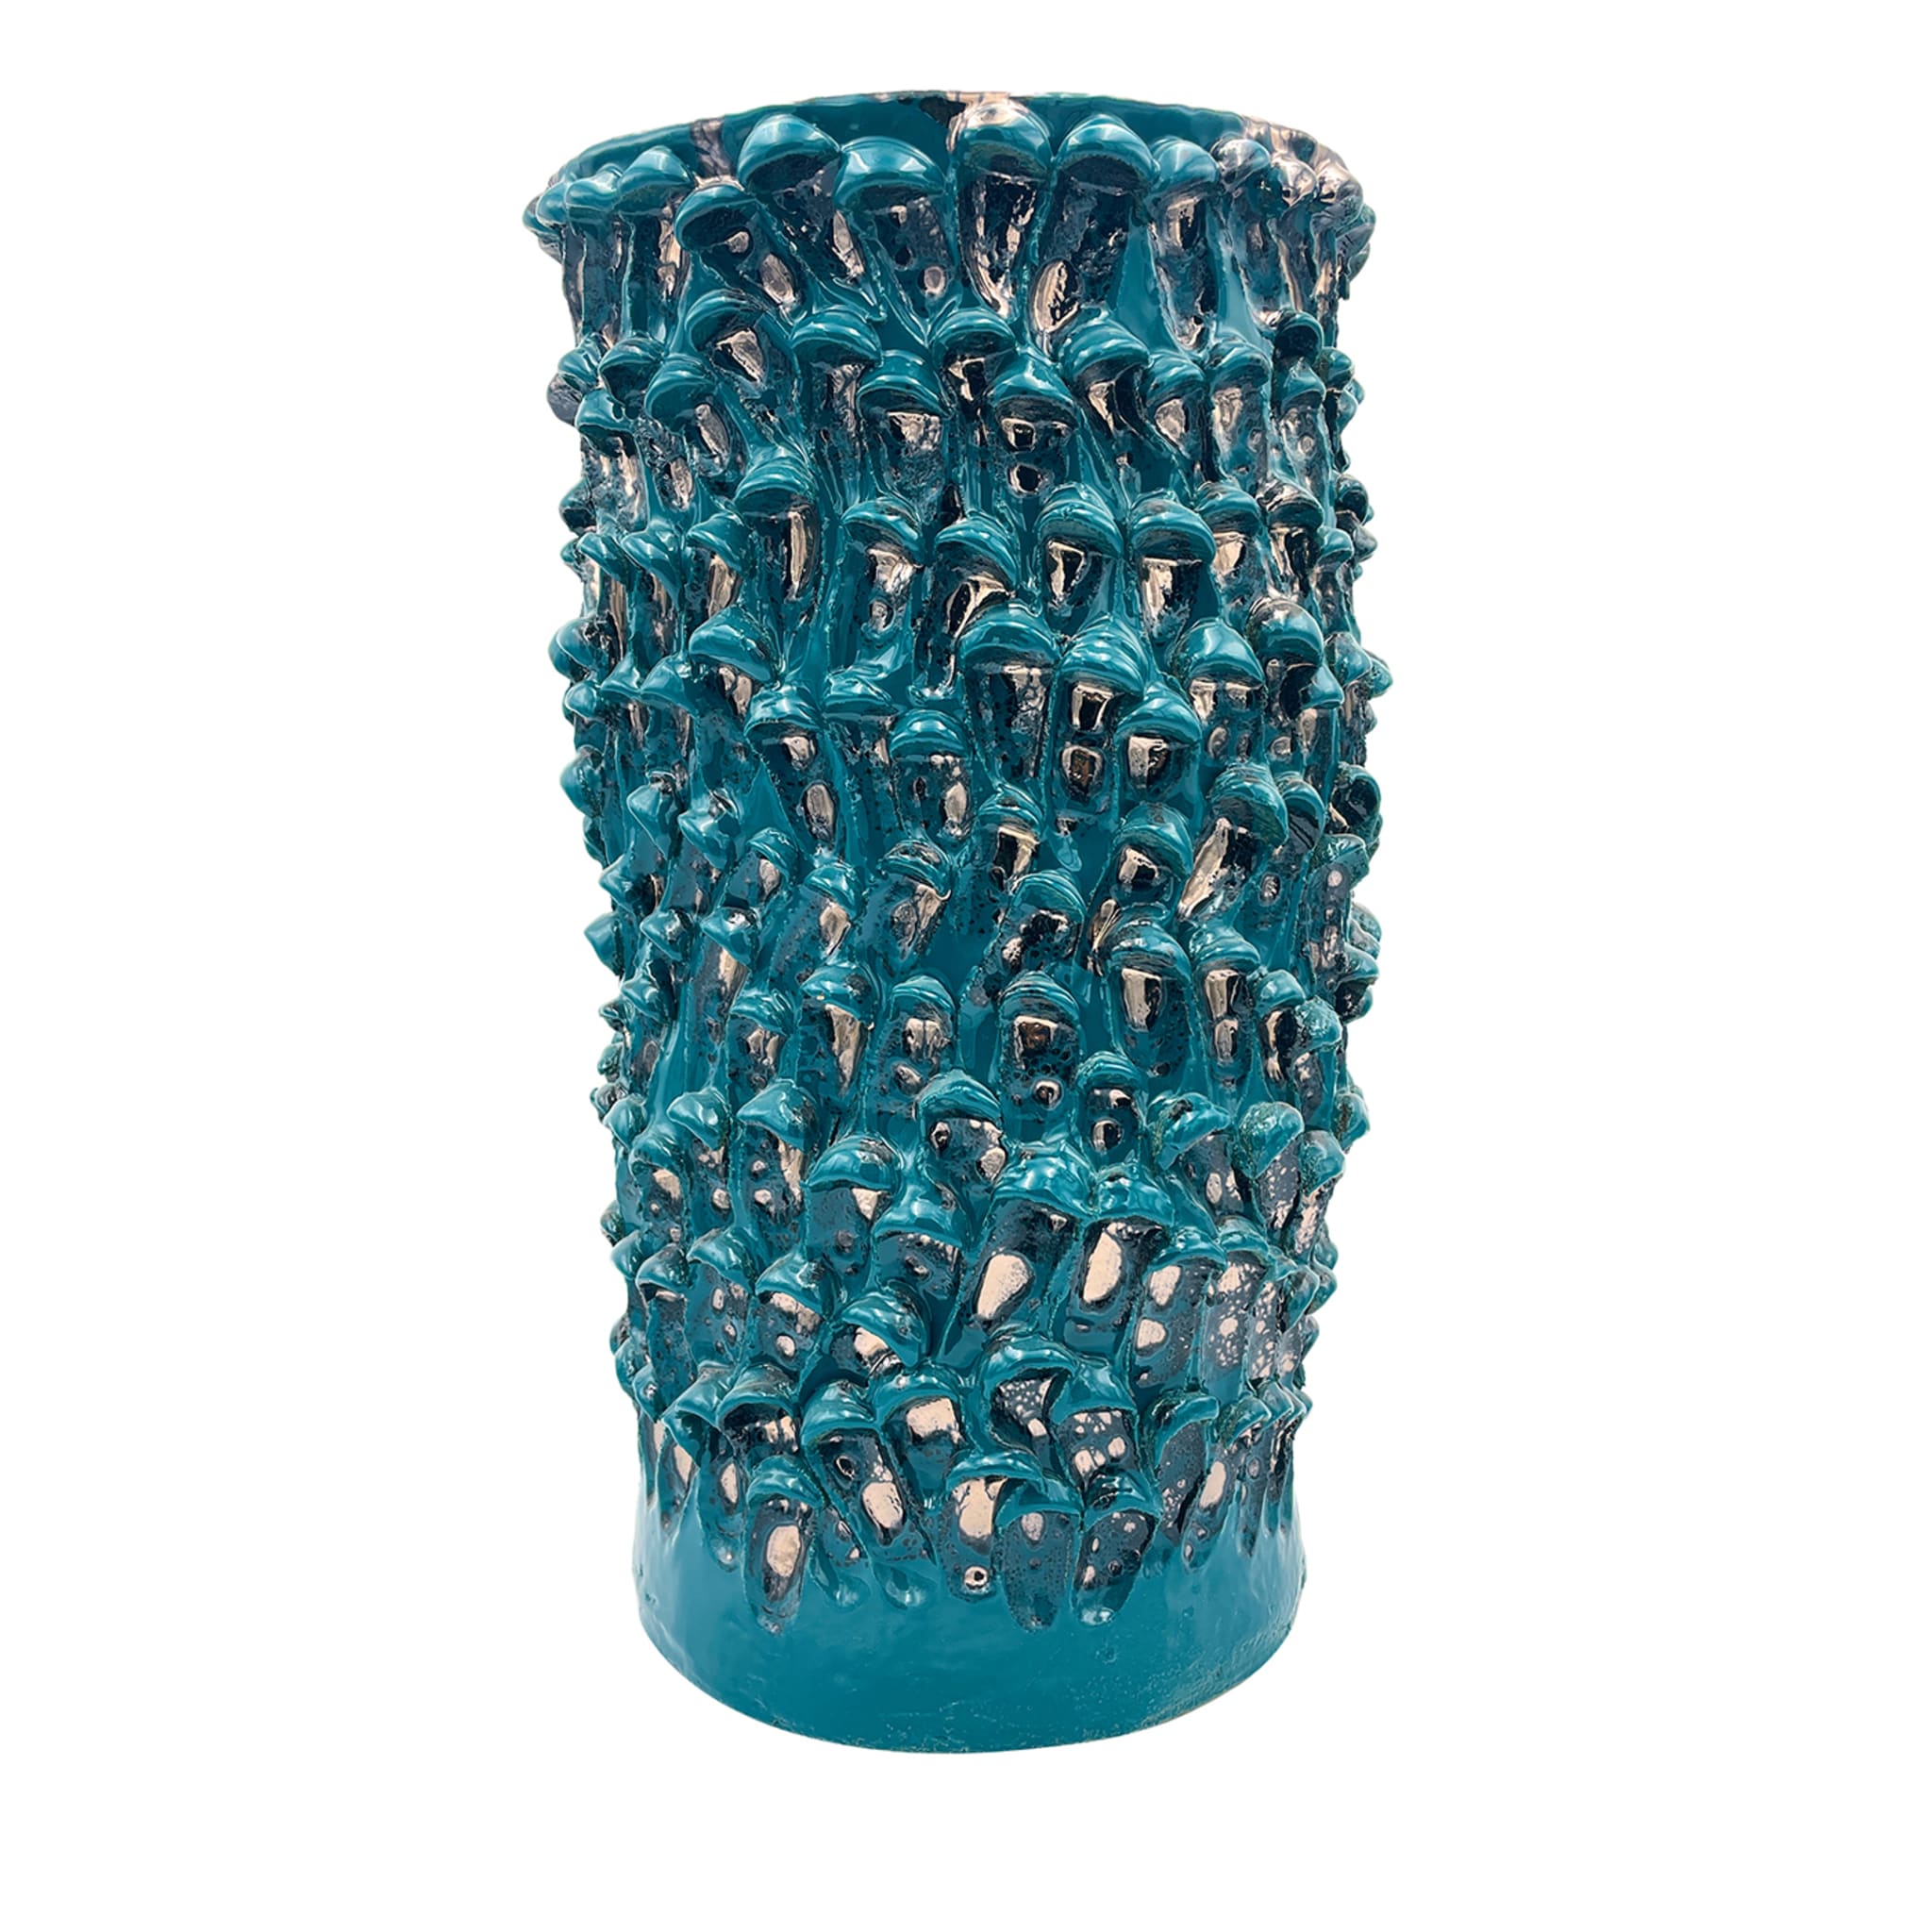 Onda Metallic Biscay Bay Große Vase - Hauptansicht